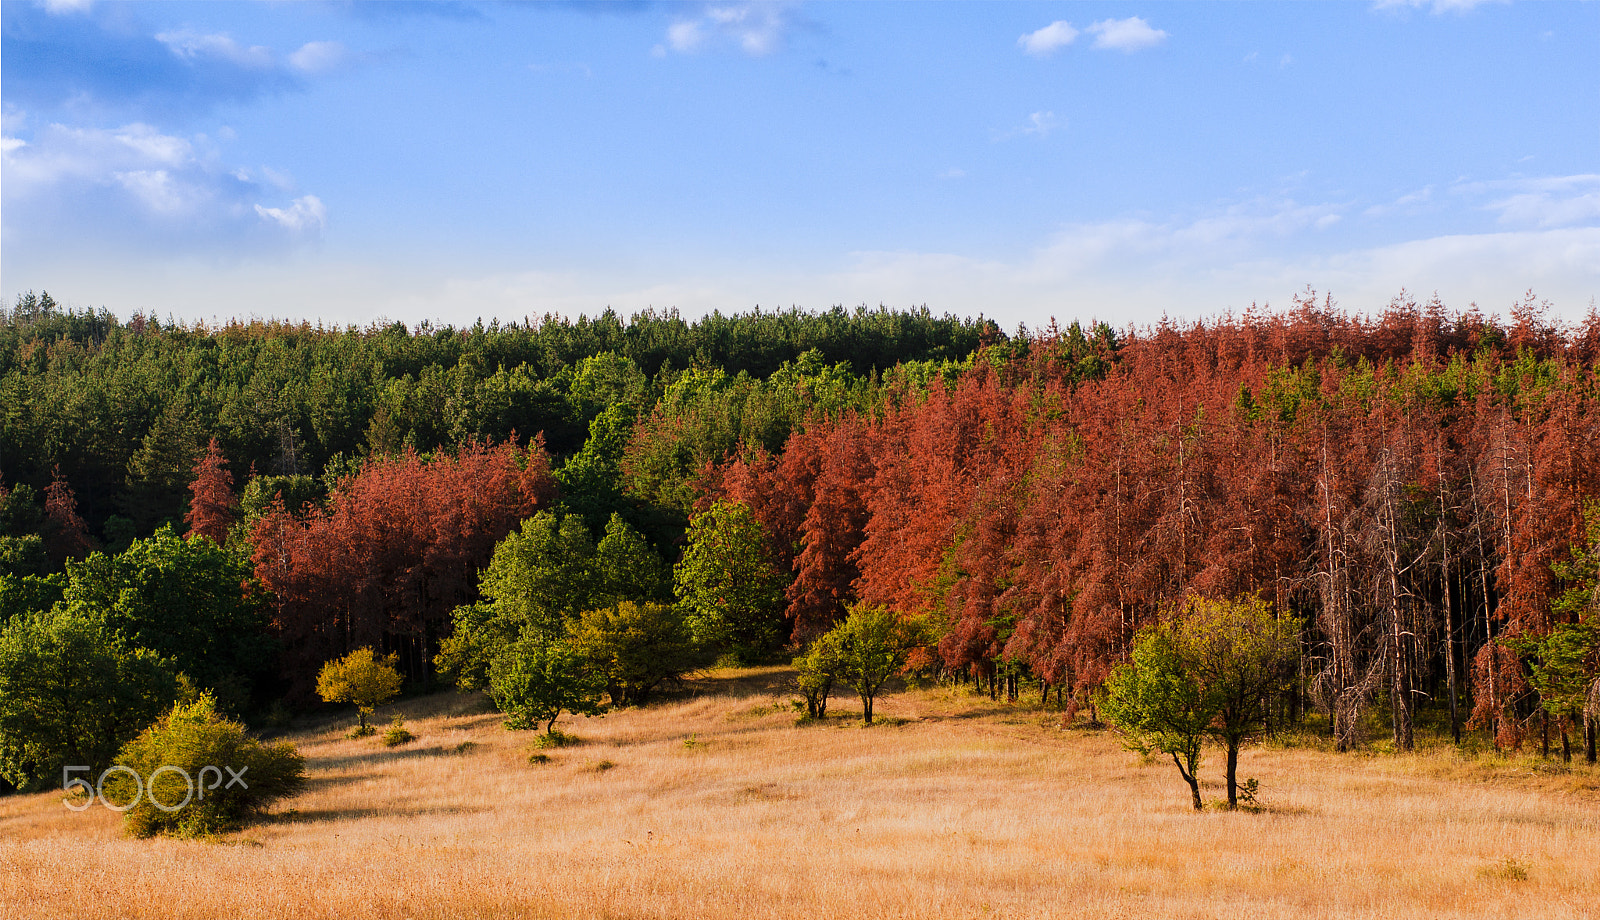 Sony SLT-A55 (SLT-A55V) sample photo. Autumn forest photography